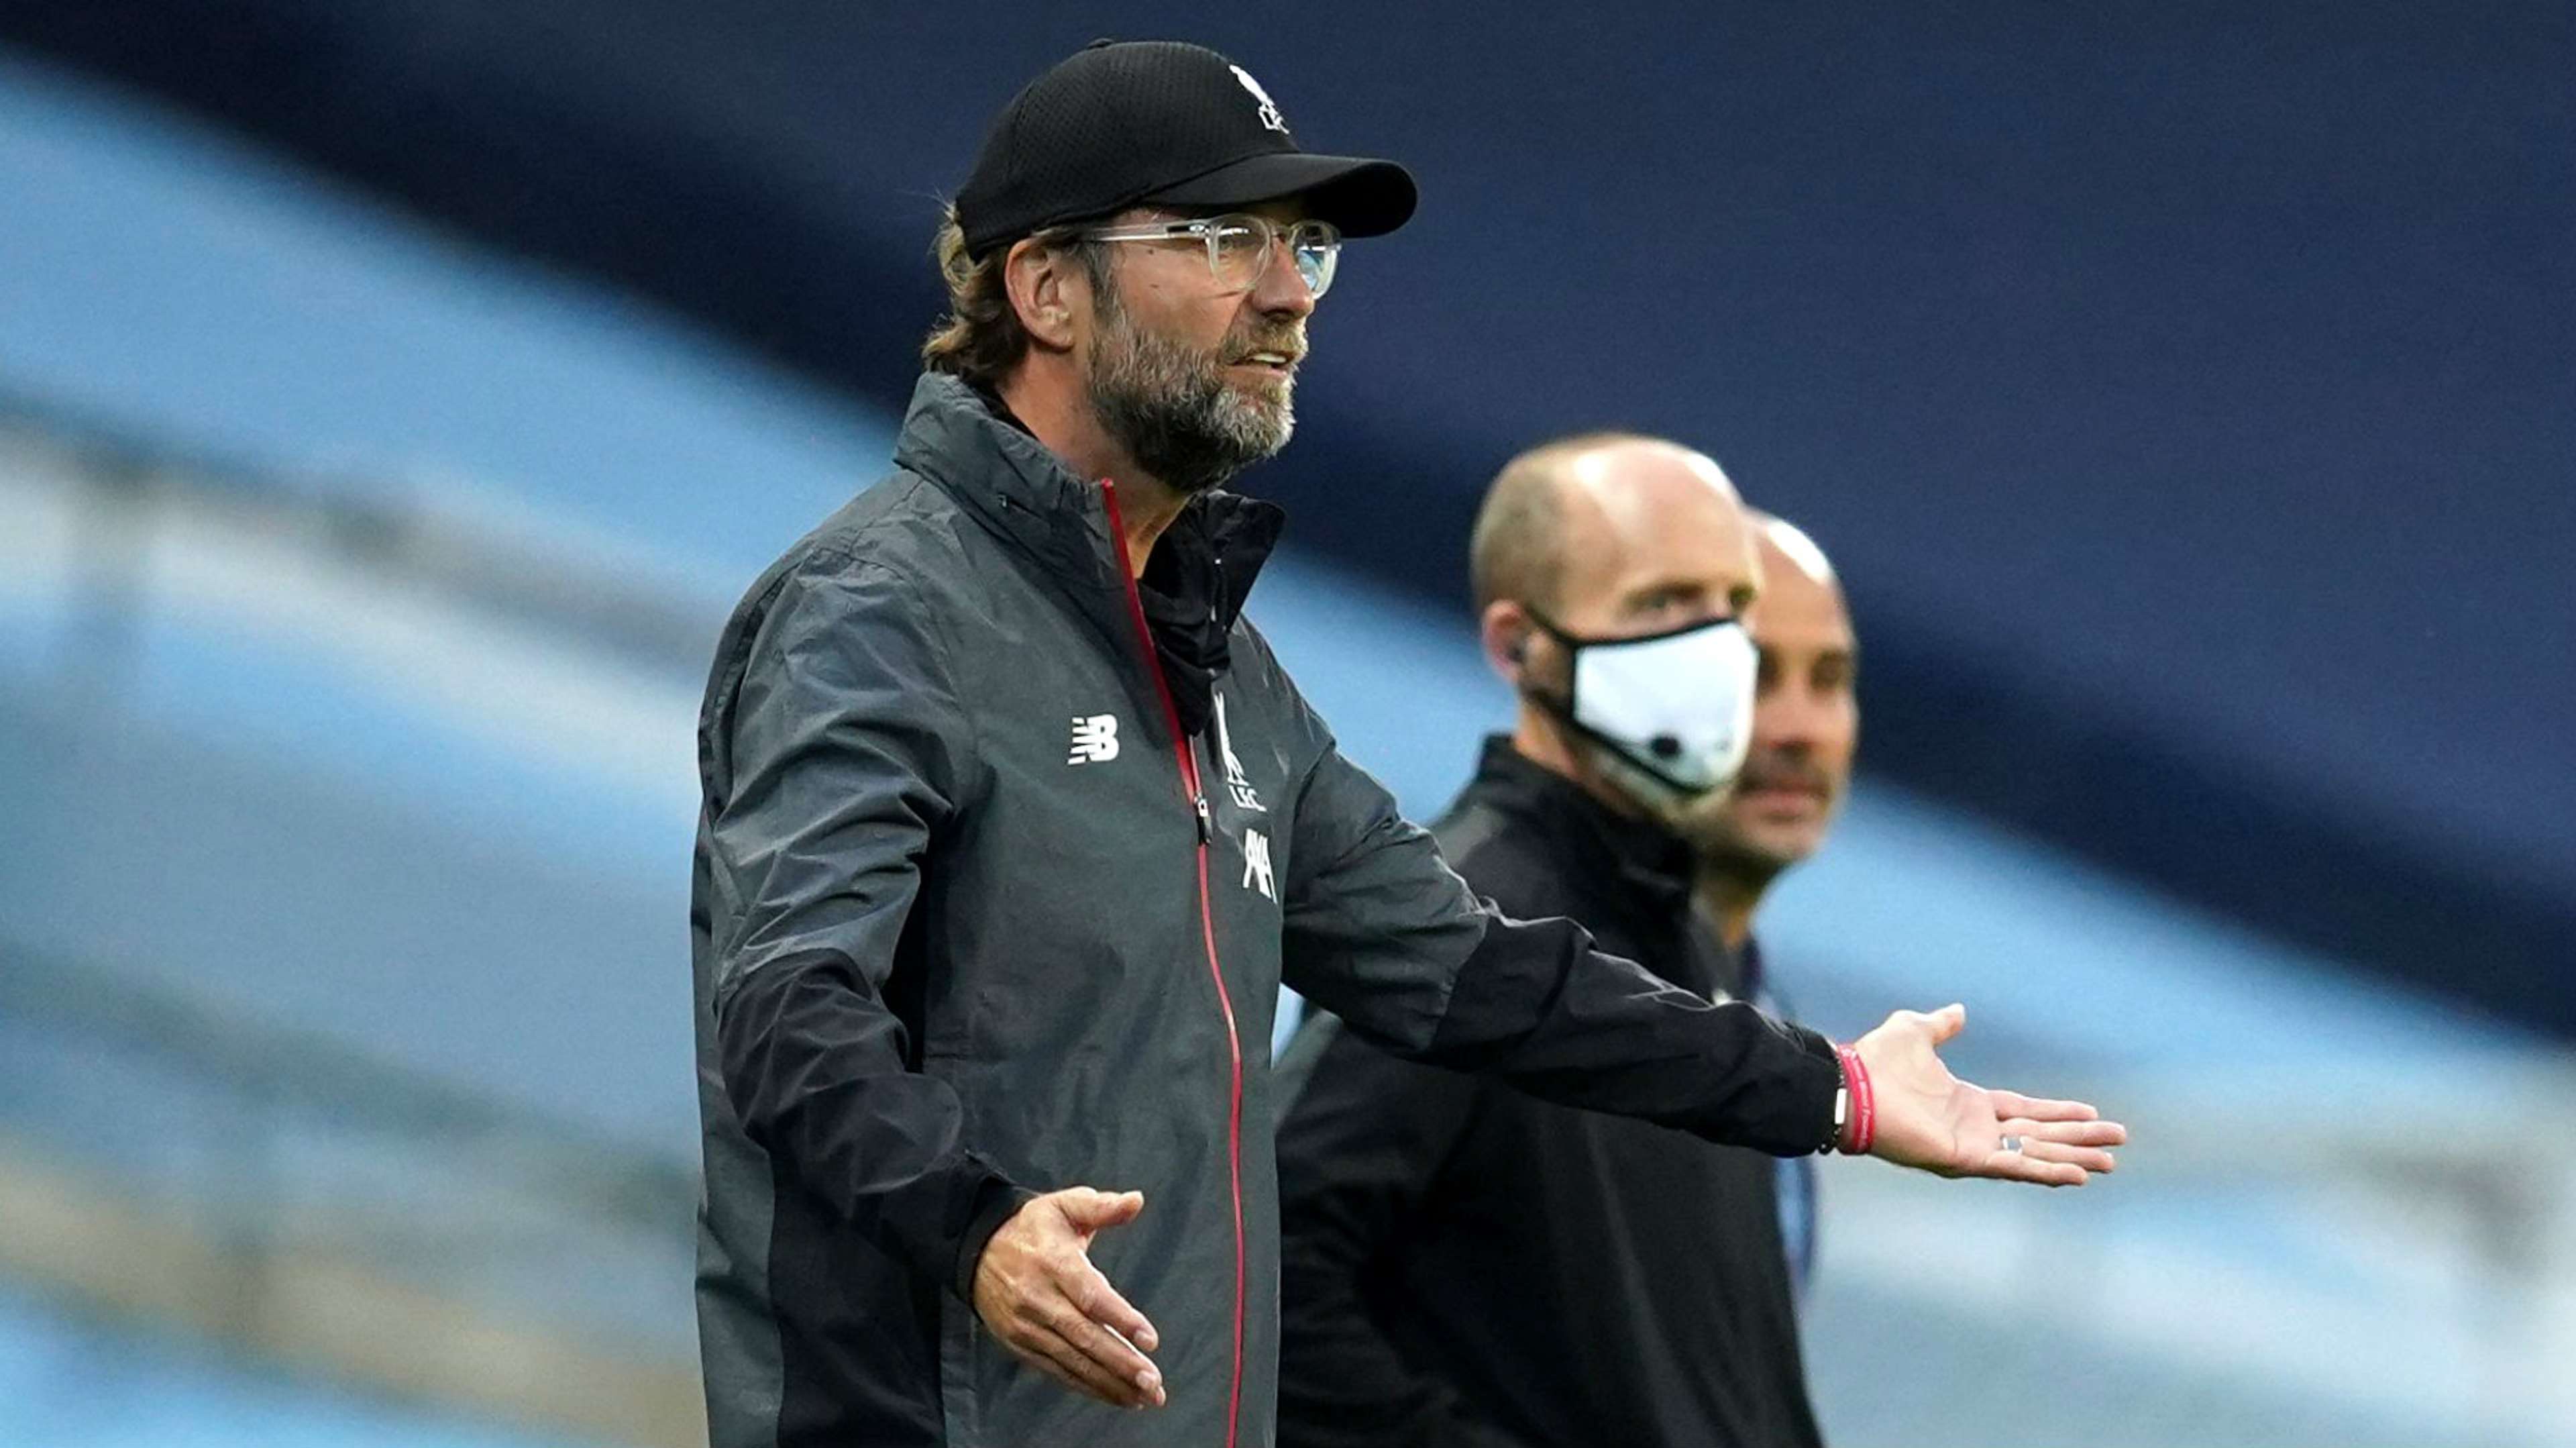 Jurgen Klopp Manchester City vs Liverpool Premier League 2019-20